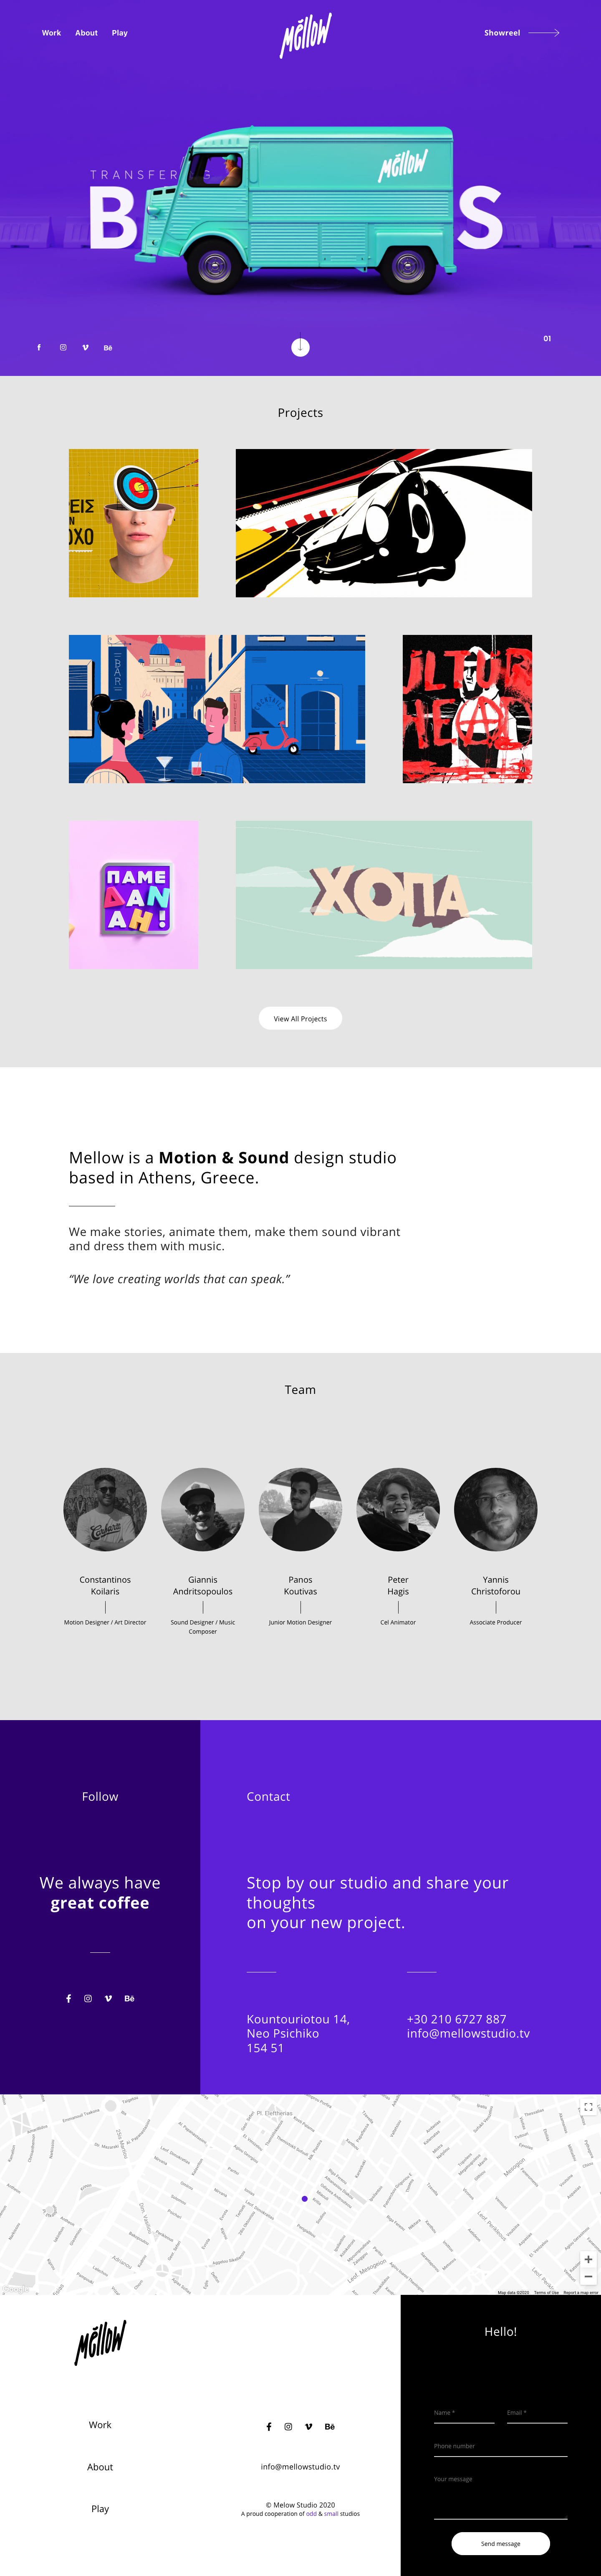 希腊声音和动画工作室Mellow网站设计